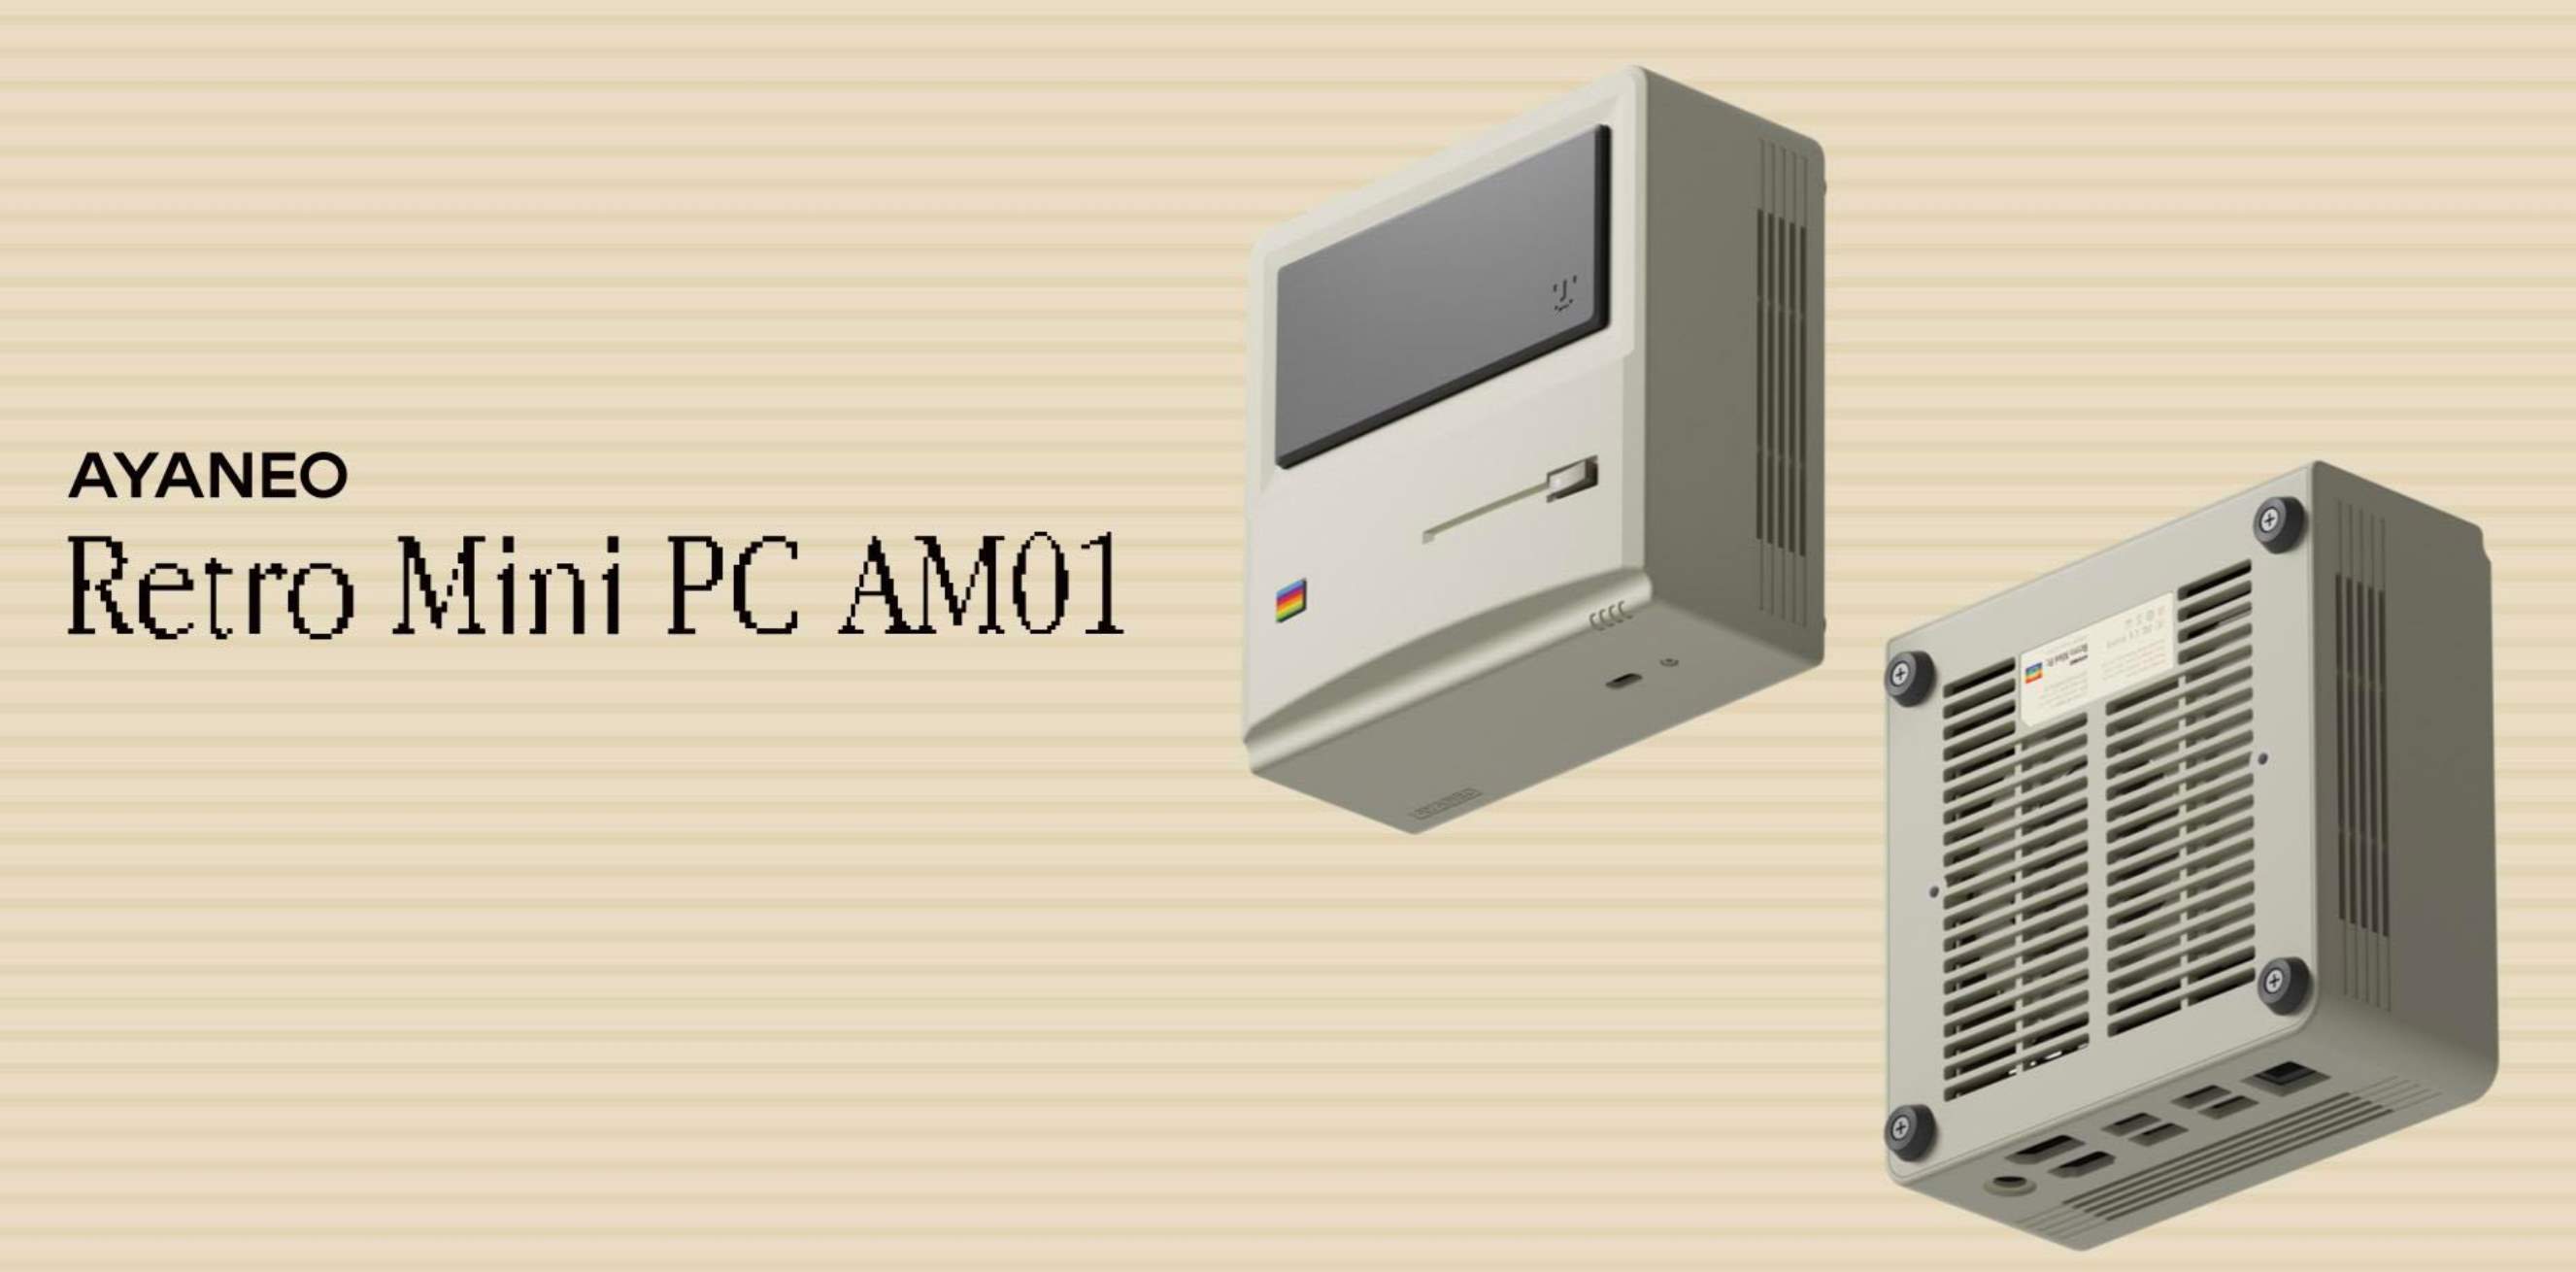 Lancio ufficiale di AYANEO Retro Mini PC AM01